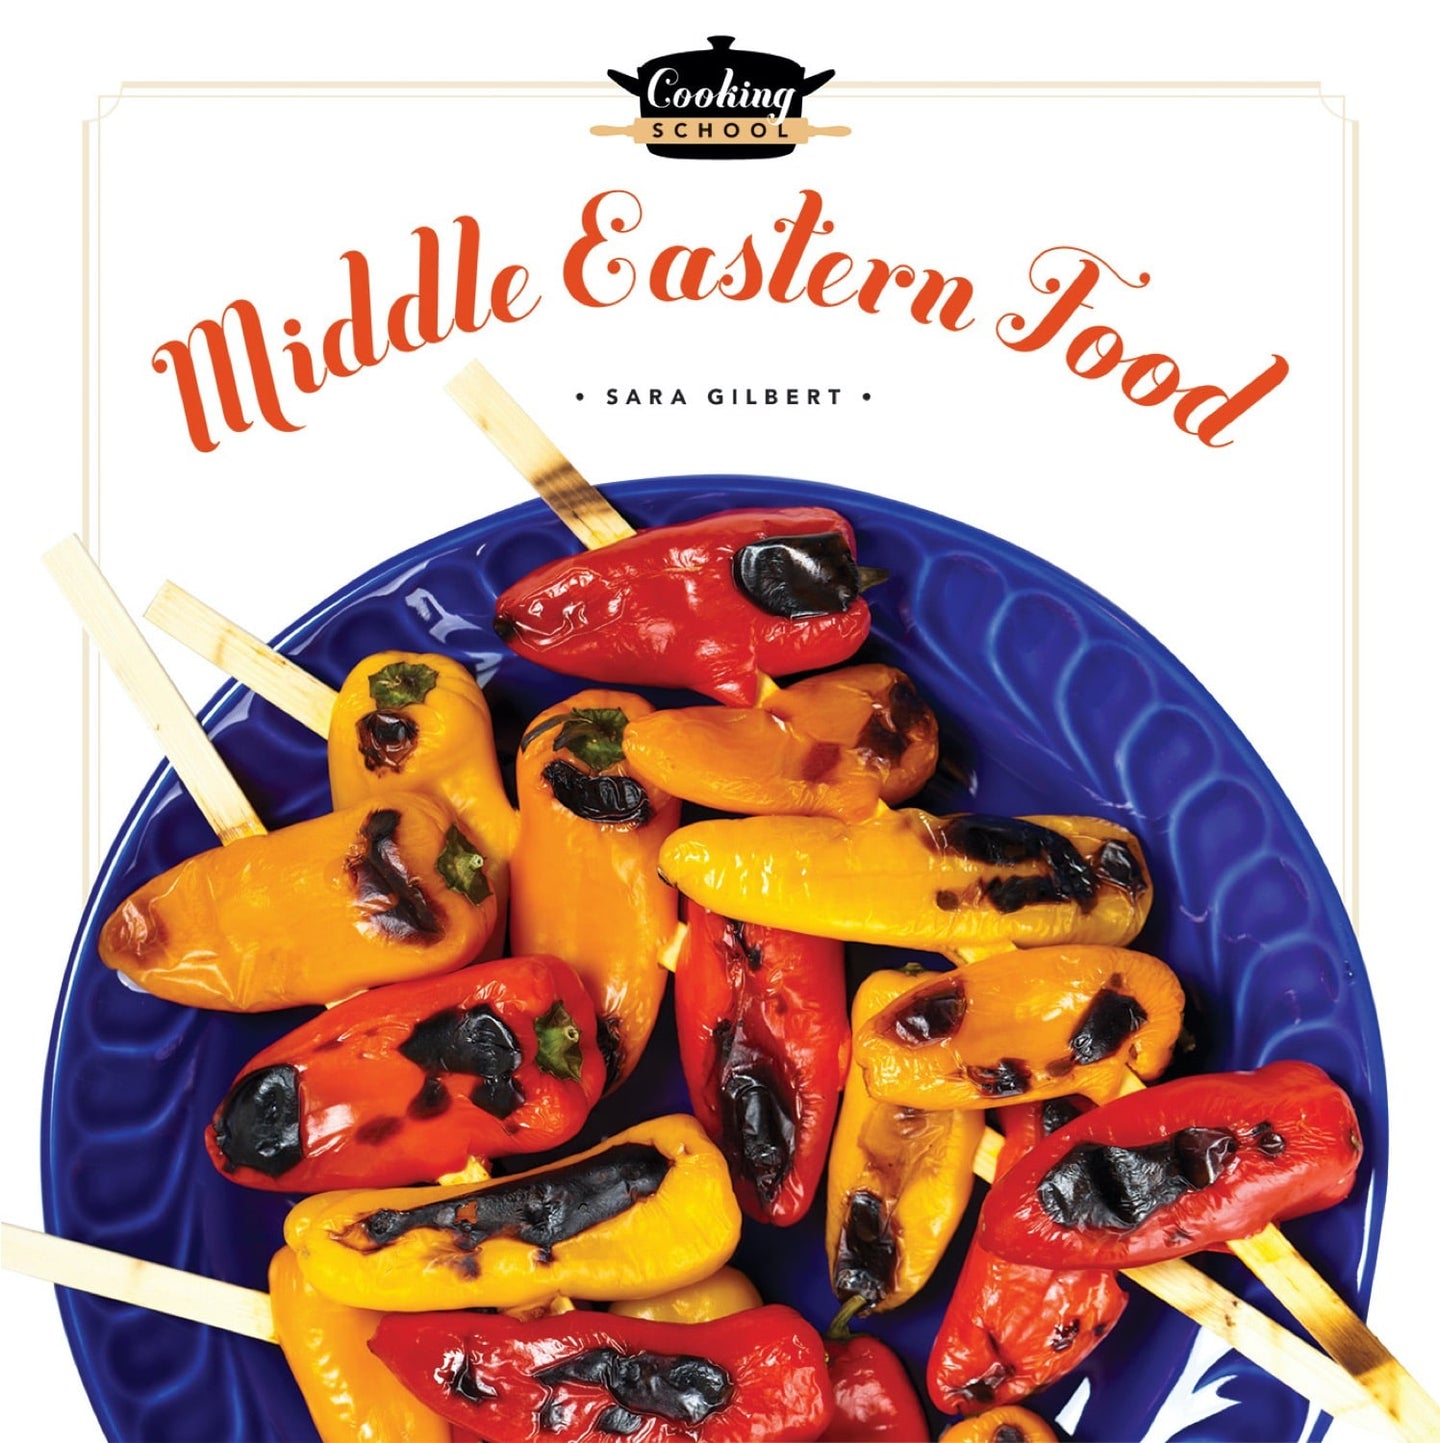 Kochschule: Essen aus dem Nahen Osten